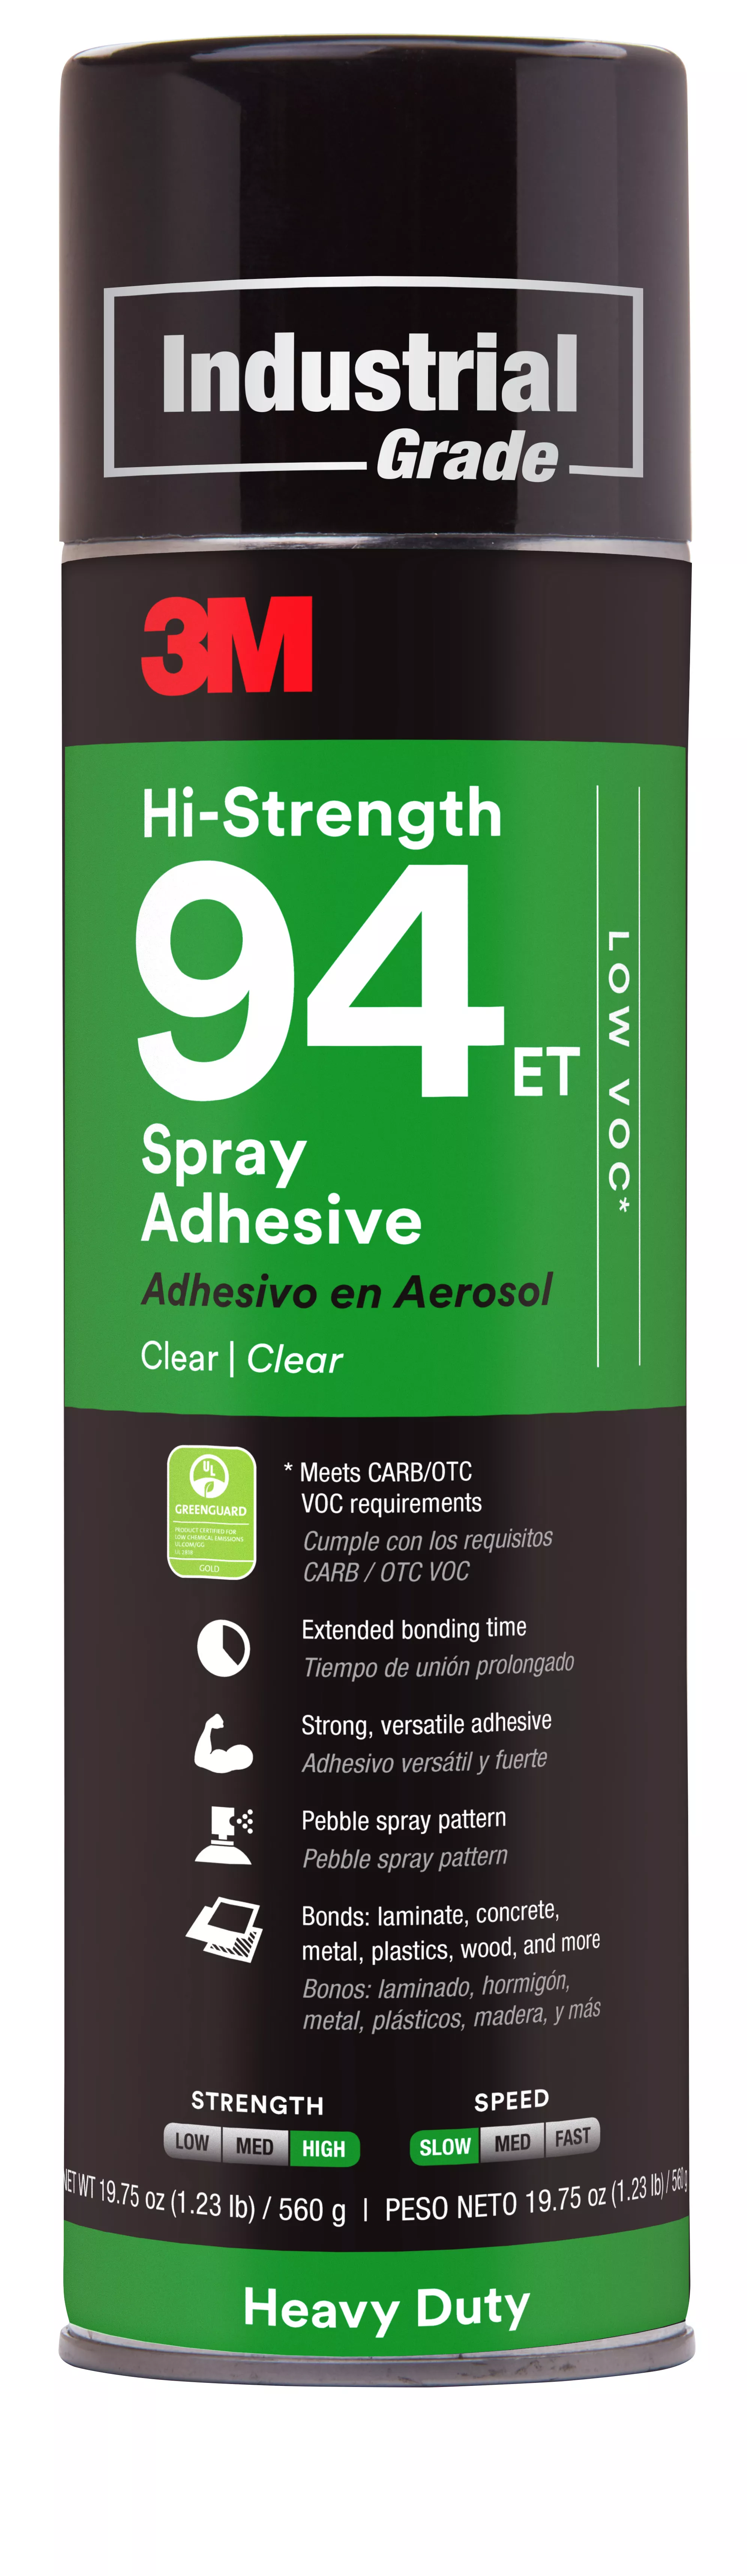 3M™ Hi-Strength Spray Adhesive 94ET, Low VOC <20%, Clear, 24 fl oz (Net
Wt 19.8 oz), 12 Can/Case